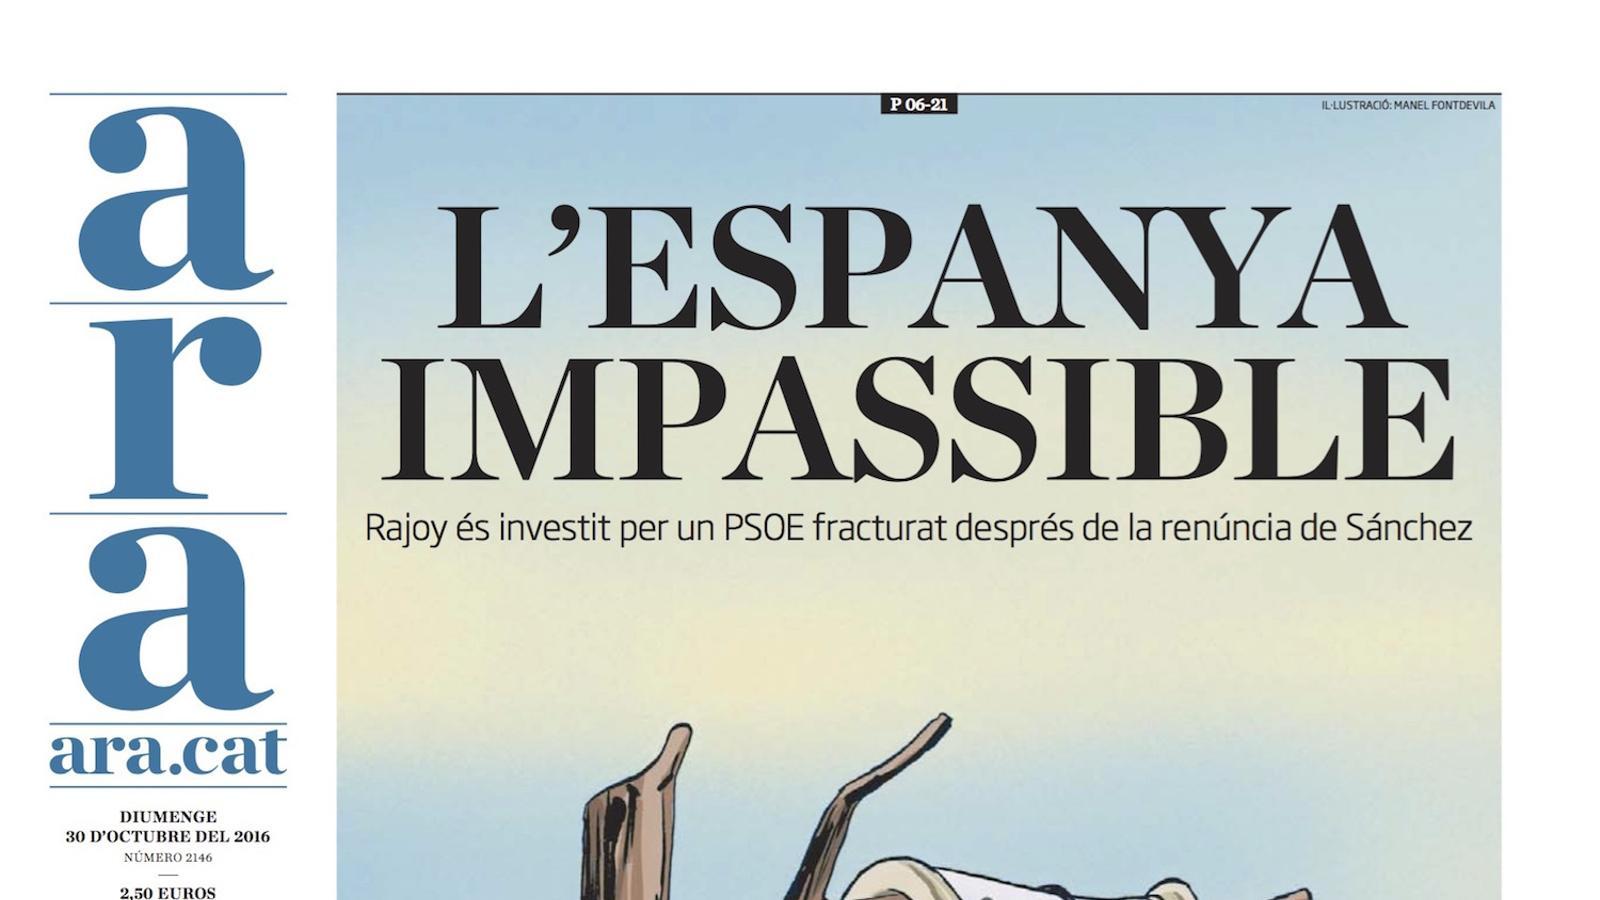 "L'Espanya impassible", portada de l'ARA